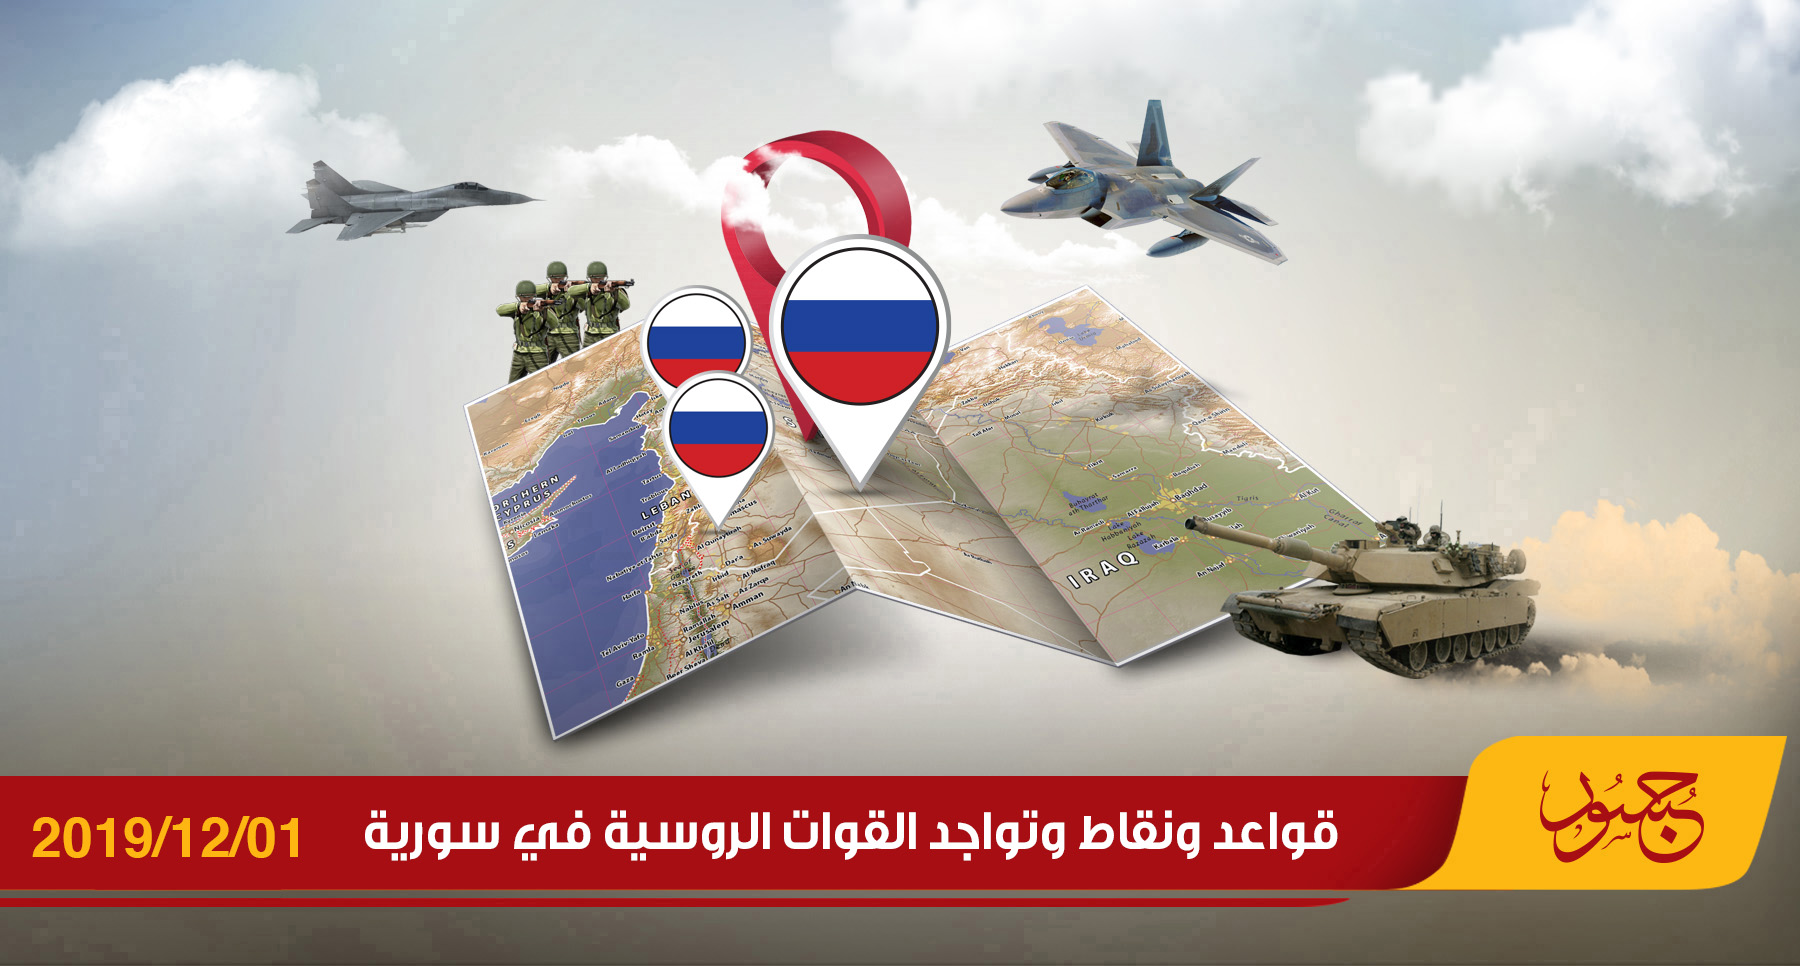 قواعد ونقاط وتواجد القوات الروسية في سورية 01-12-2019